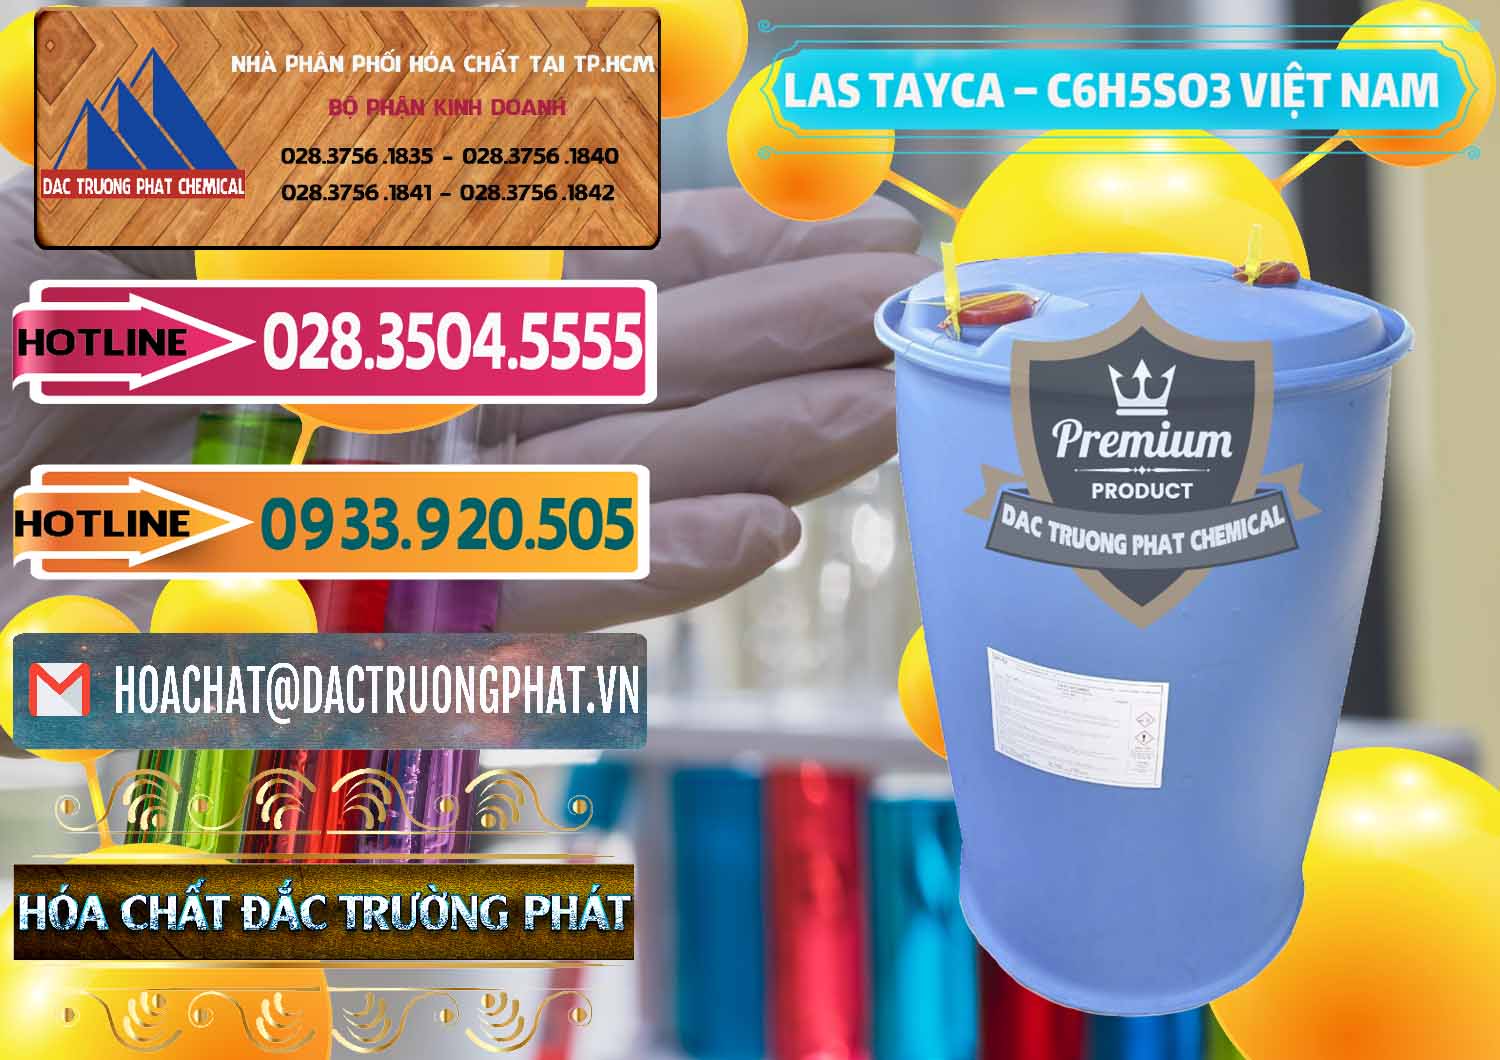 Cty chuyên cung ứng ( bán ) Chất tạo bọt Las Tayca Việt Nam - 0305 - Đơn vị chuyên bán & cung cấp hóa chất tại TP.HCM - dactruongphat.vn